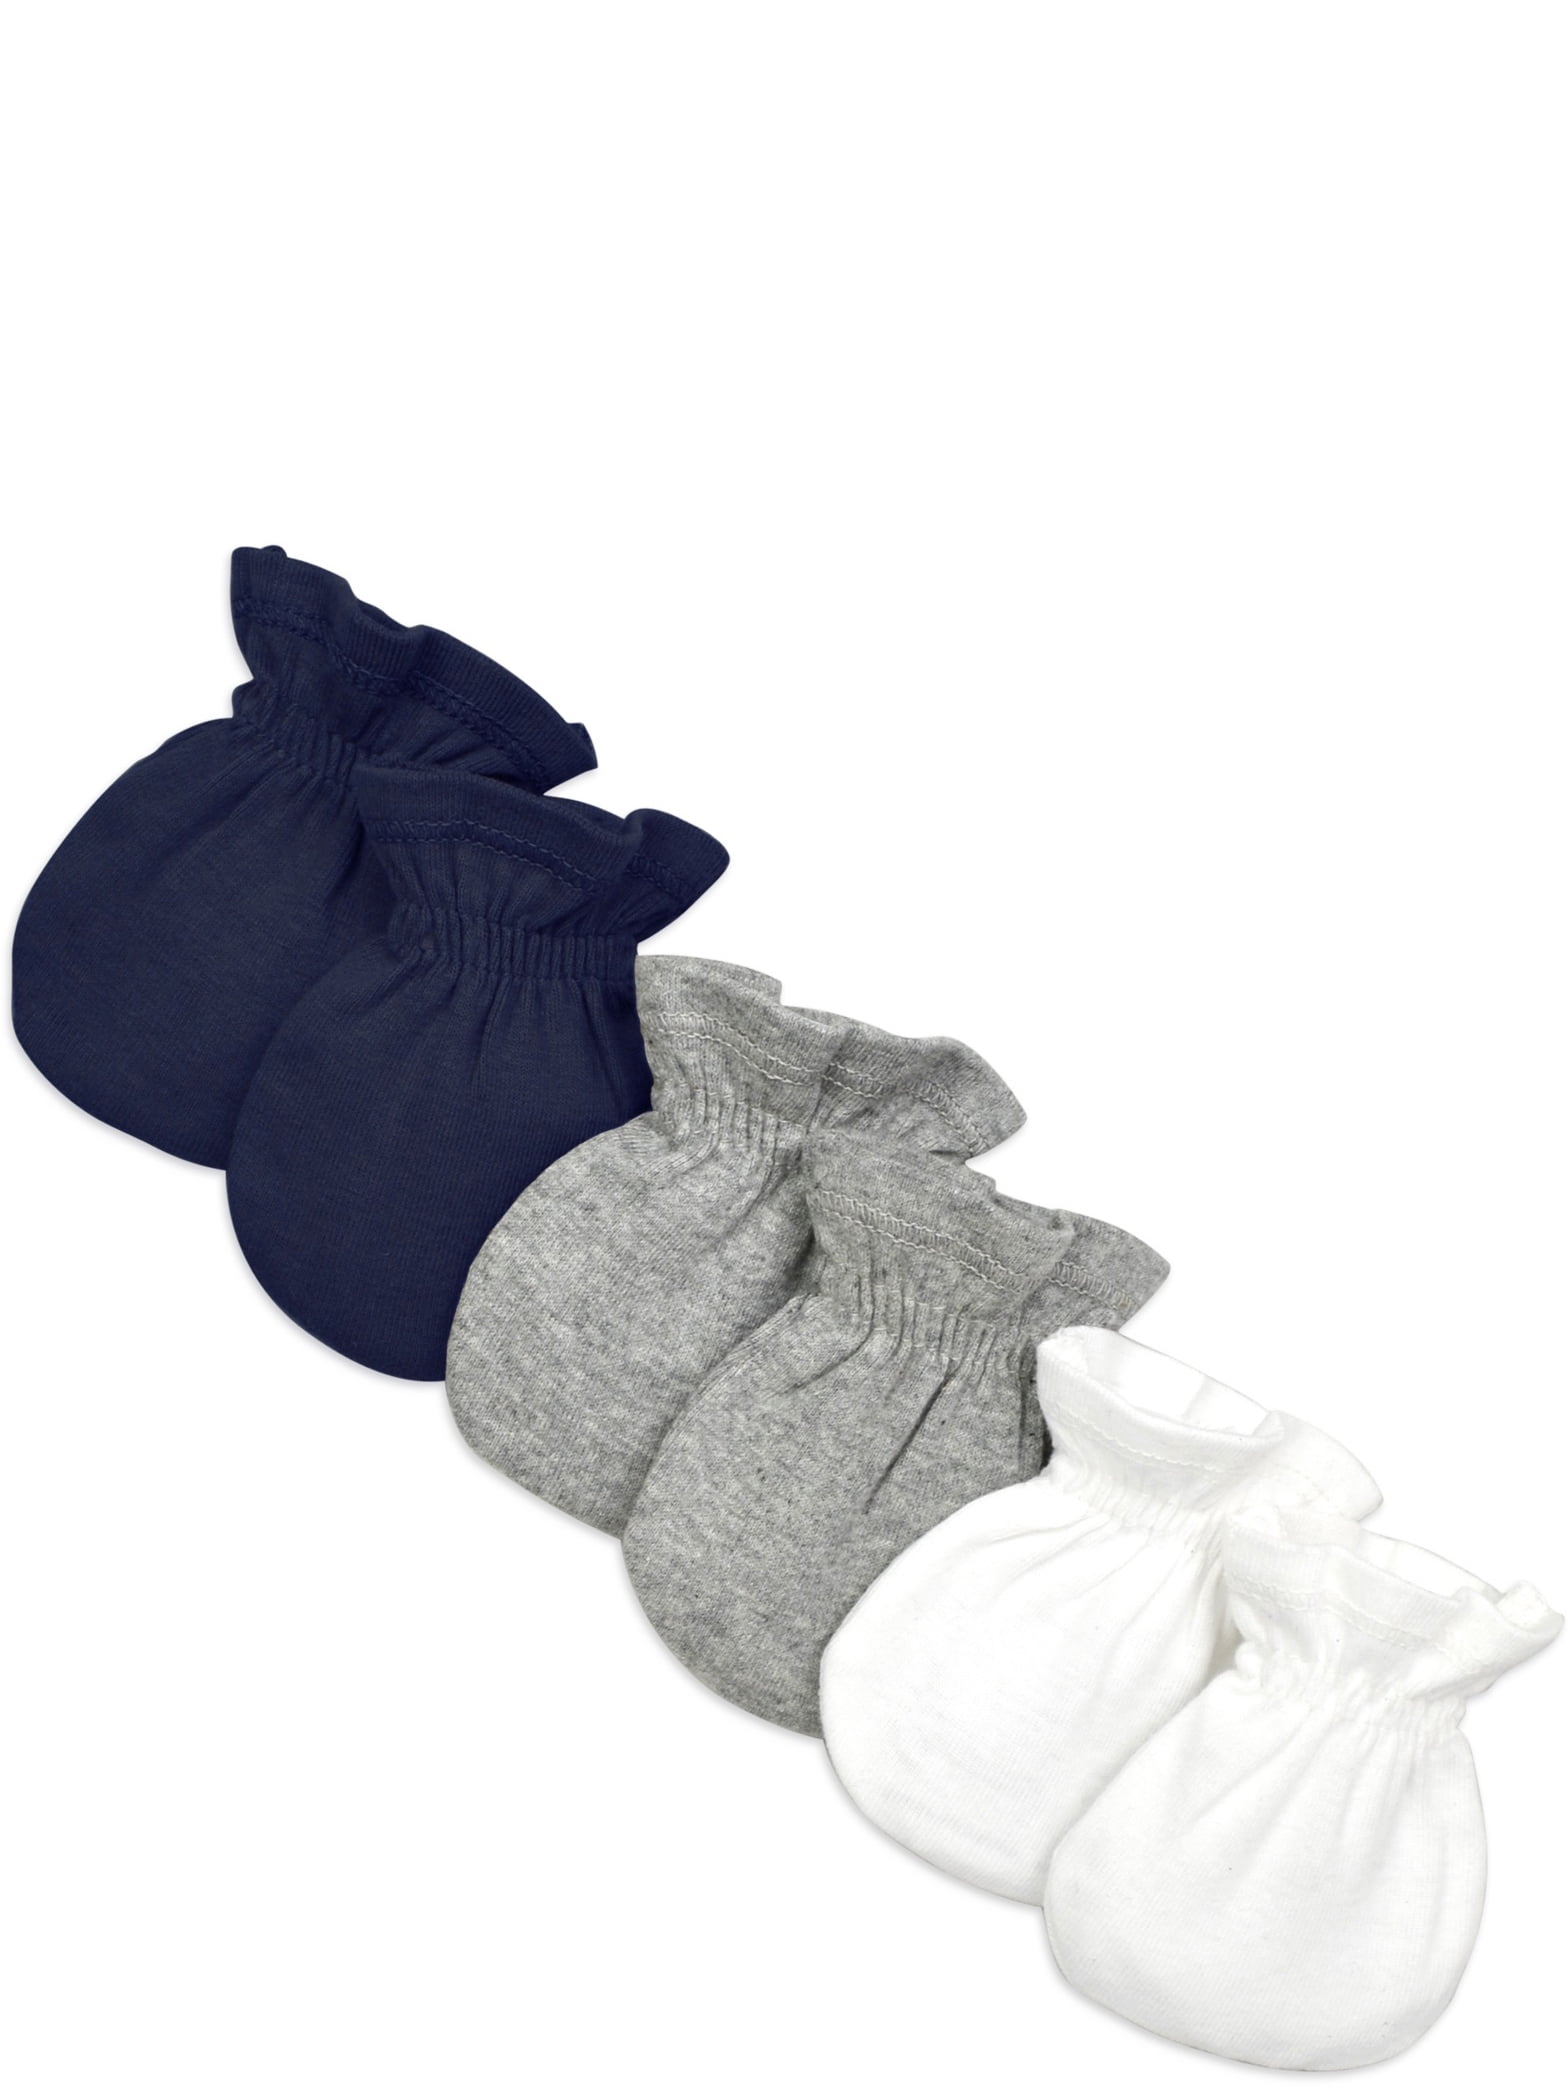 24-Piece Newborn  Baby Anti Scratch Mittens  White 100% Cotton Baby Gloves. 